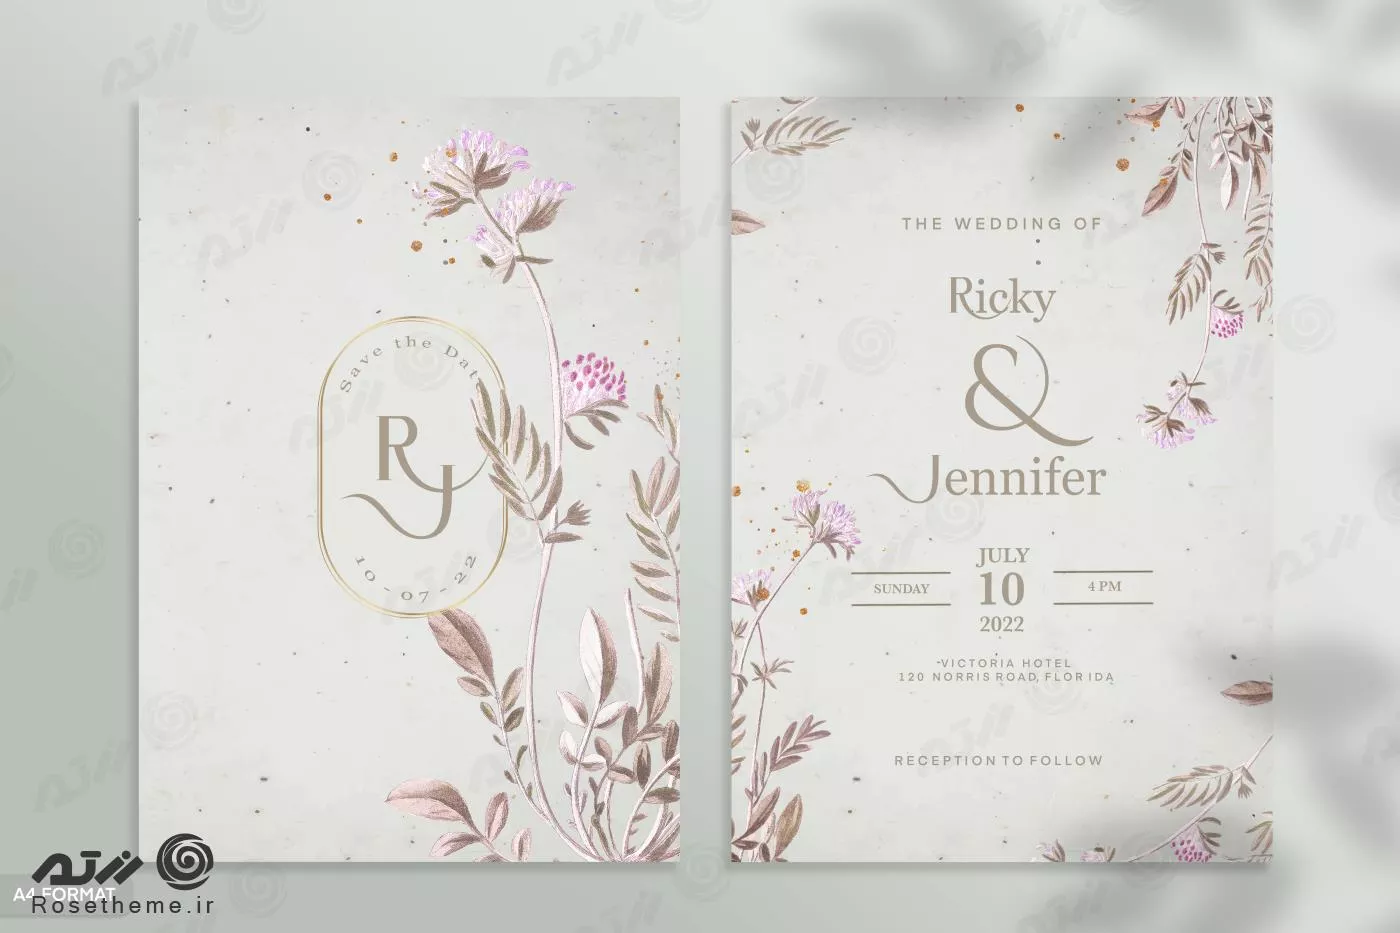 قالب فتوشاپ کارت دعوت عروسی با زمینه سفید و حاشیه گل های صورتی و گلبرگهای پوست پیازی به همراه جای متن برای نوشتن فایل psd لایه باز 21370